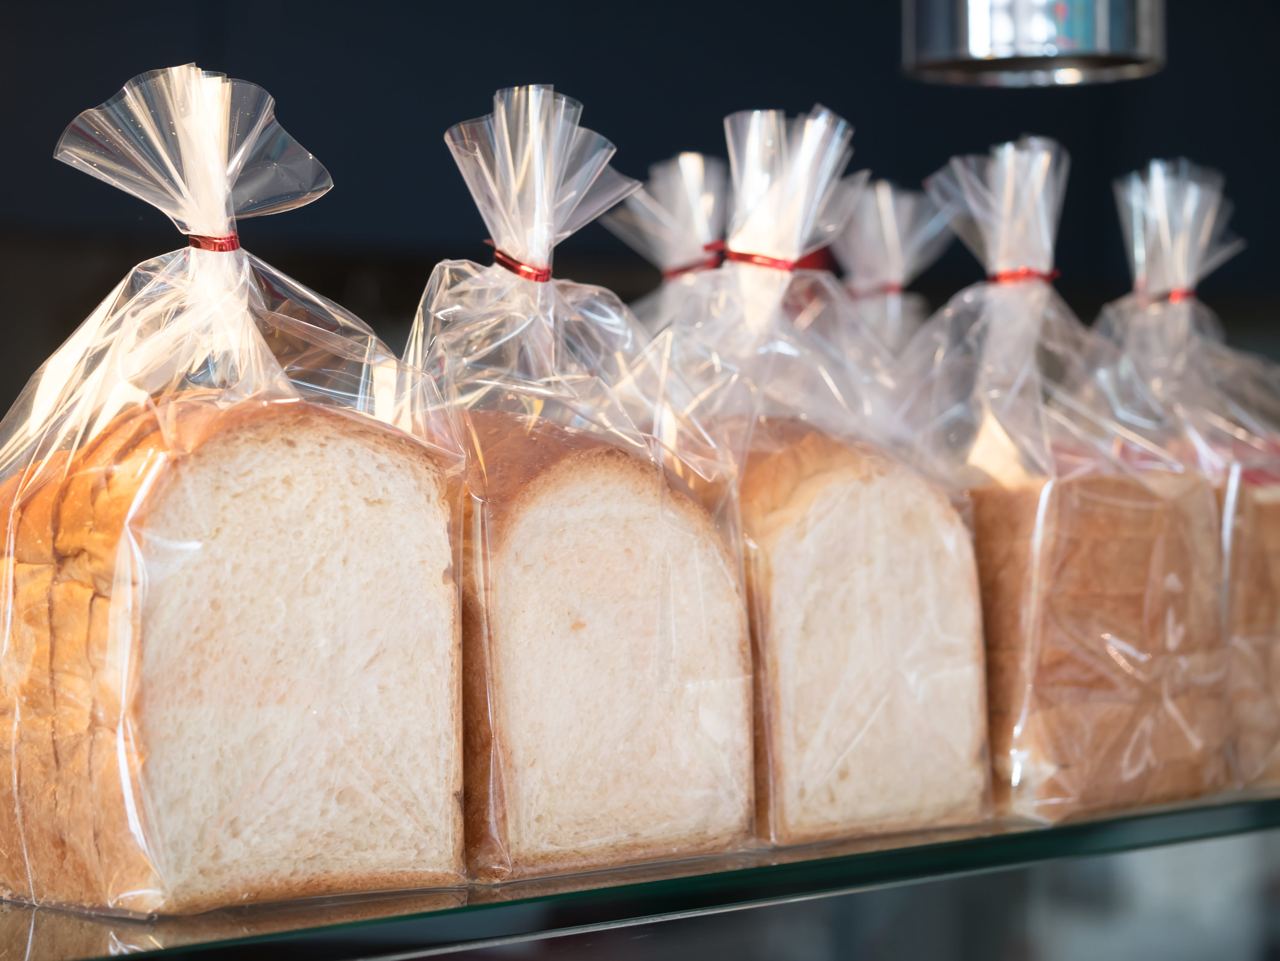 Заморозка хлеба. Хлеб в упаковке. Упаковка замороженных хлебобулочных изделий. Упаковочные материалы для хлебобулочных изделий. Упаковка хлебобулочных изделий на производстве.